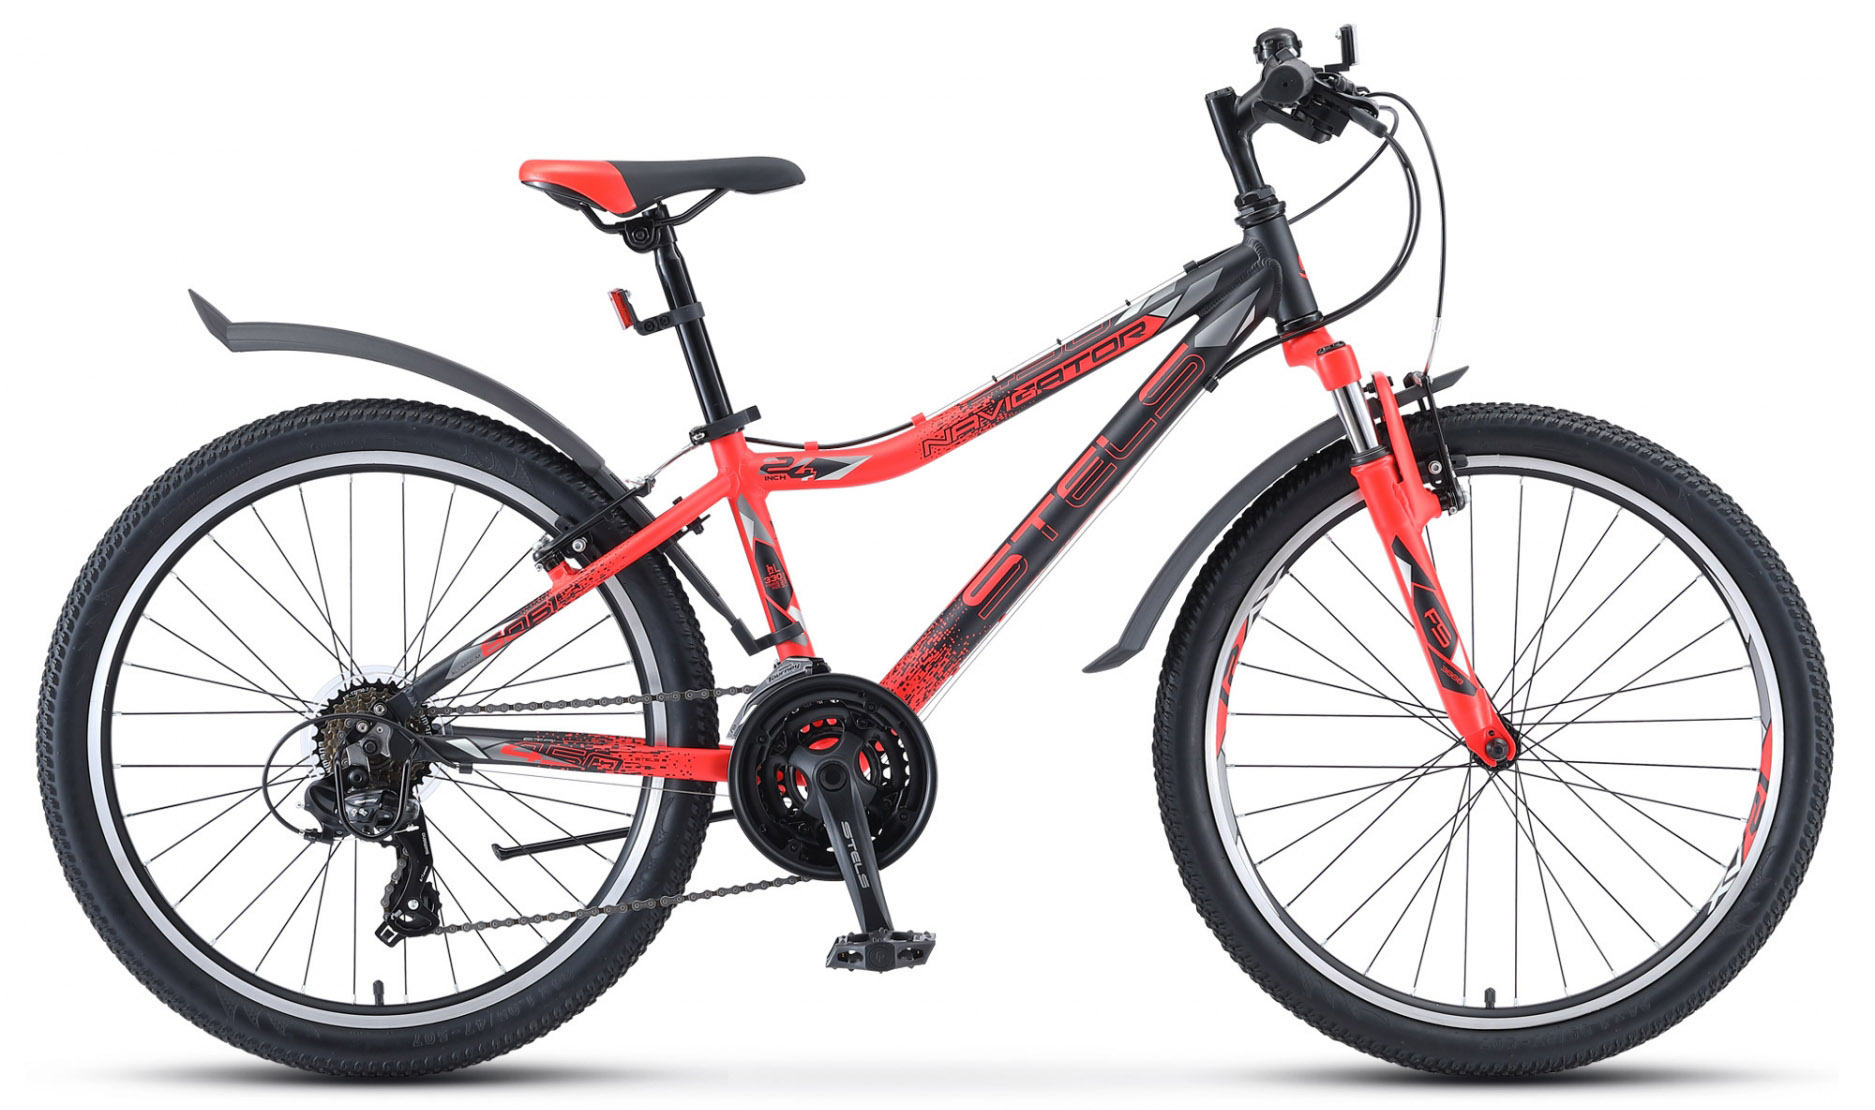  Отзывы о Подростковом велосипеде Stels Navigator 450 V V030 2020